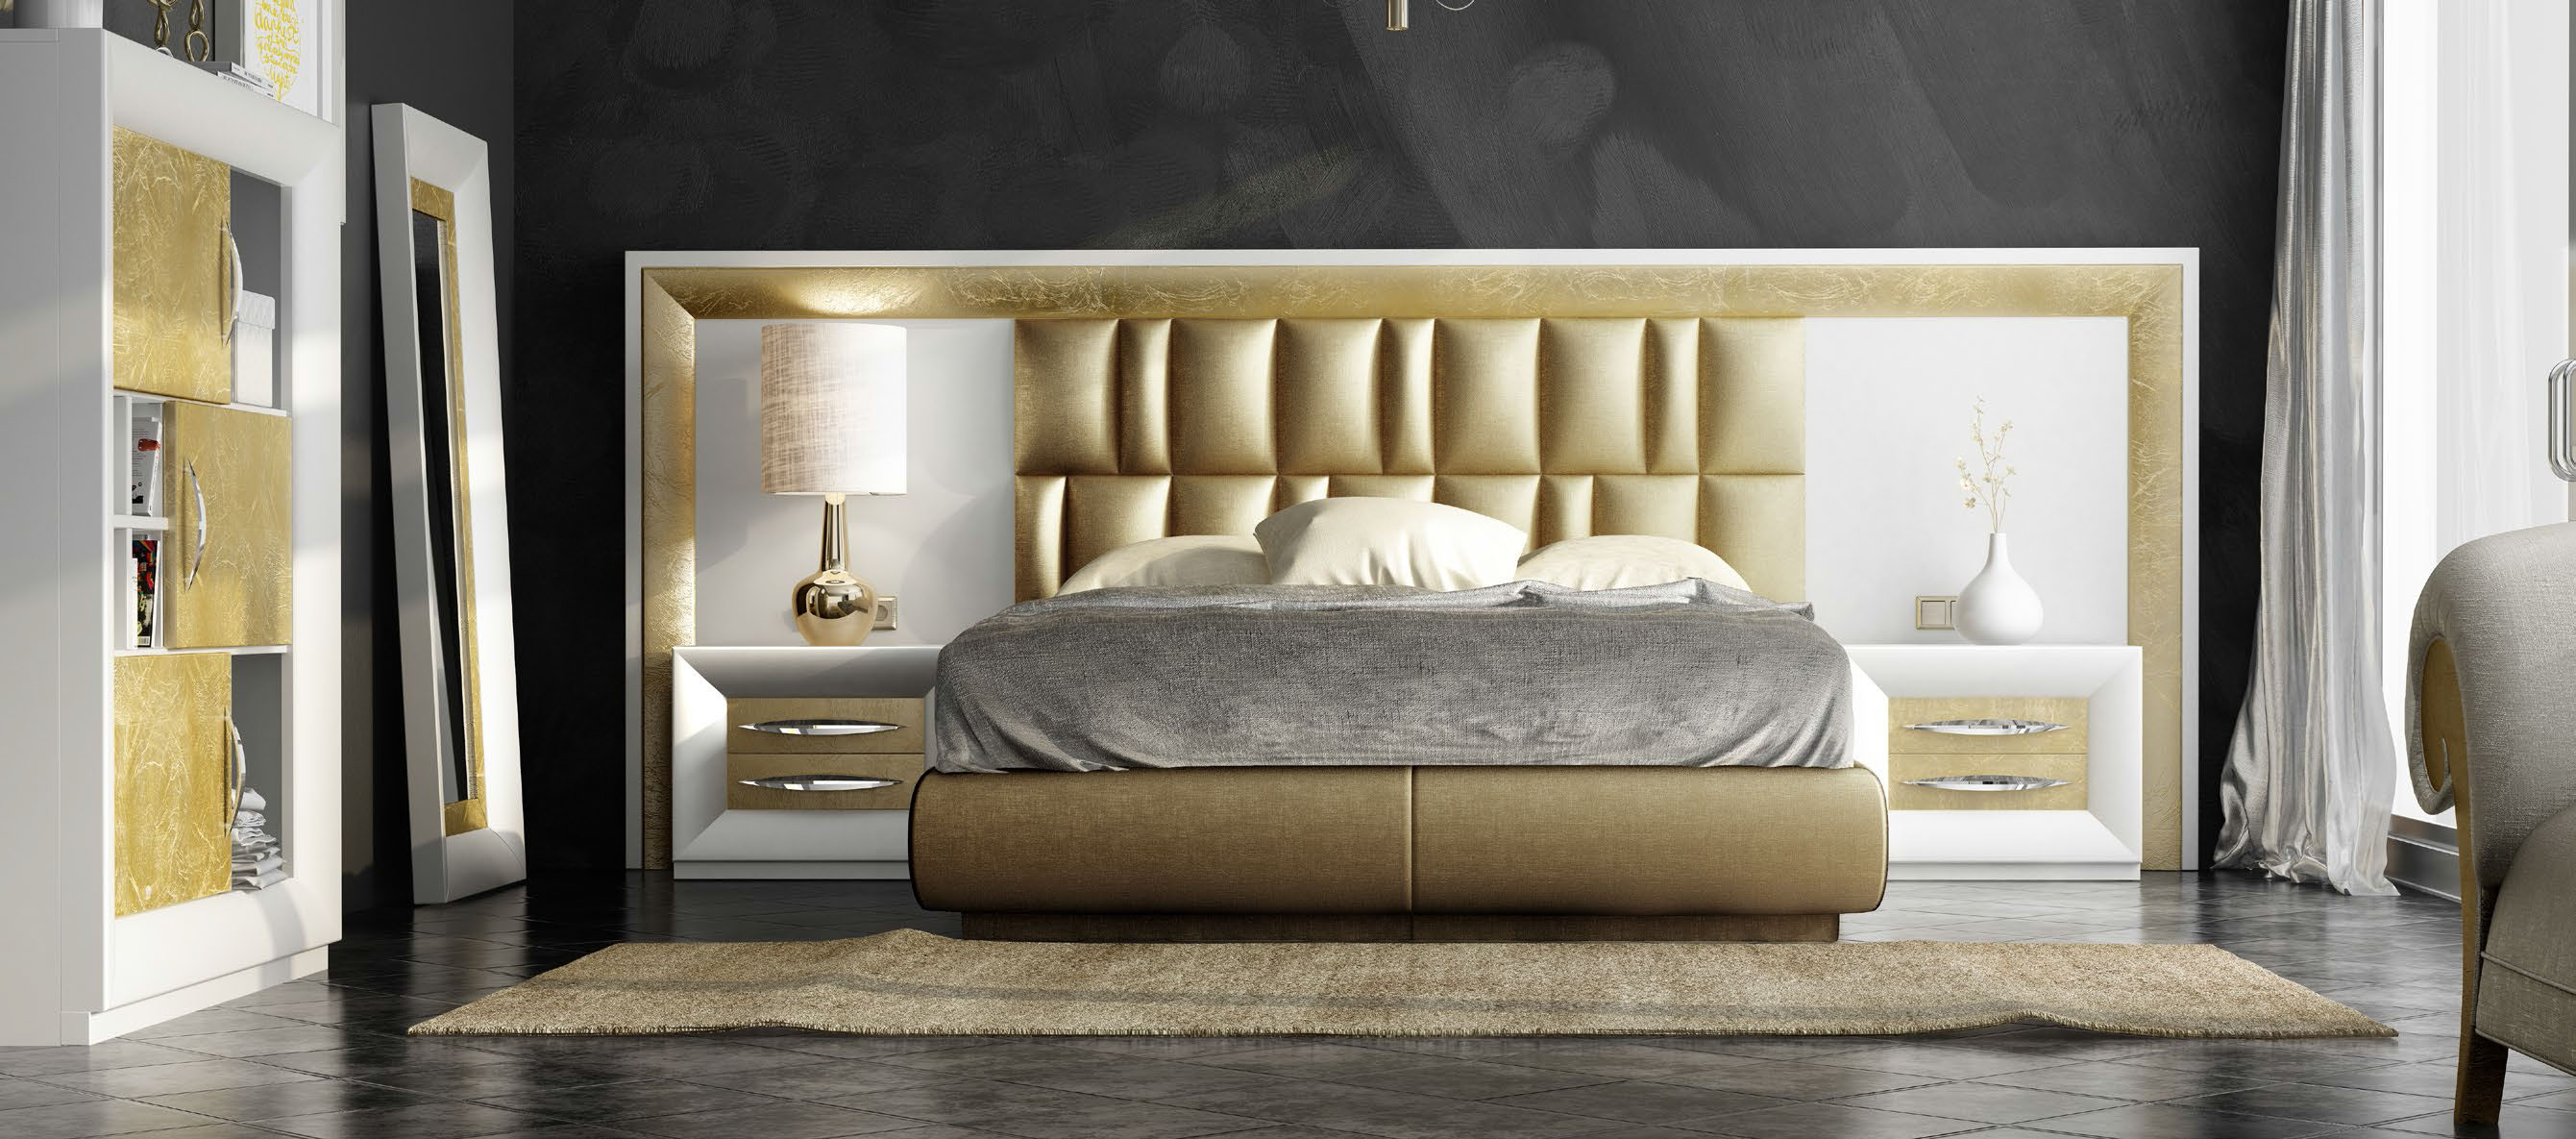 Brands Franco Furniture Avanty Bedrooms, Spain DOR 136